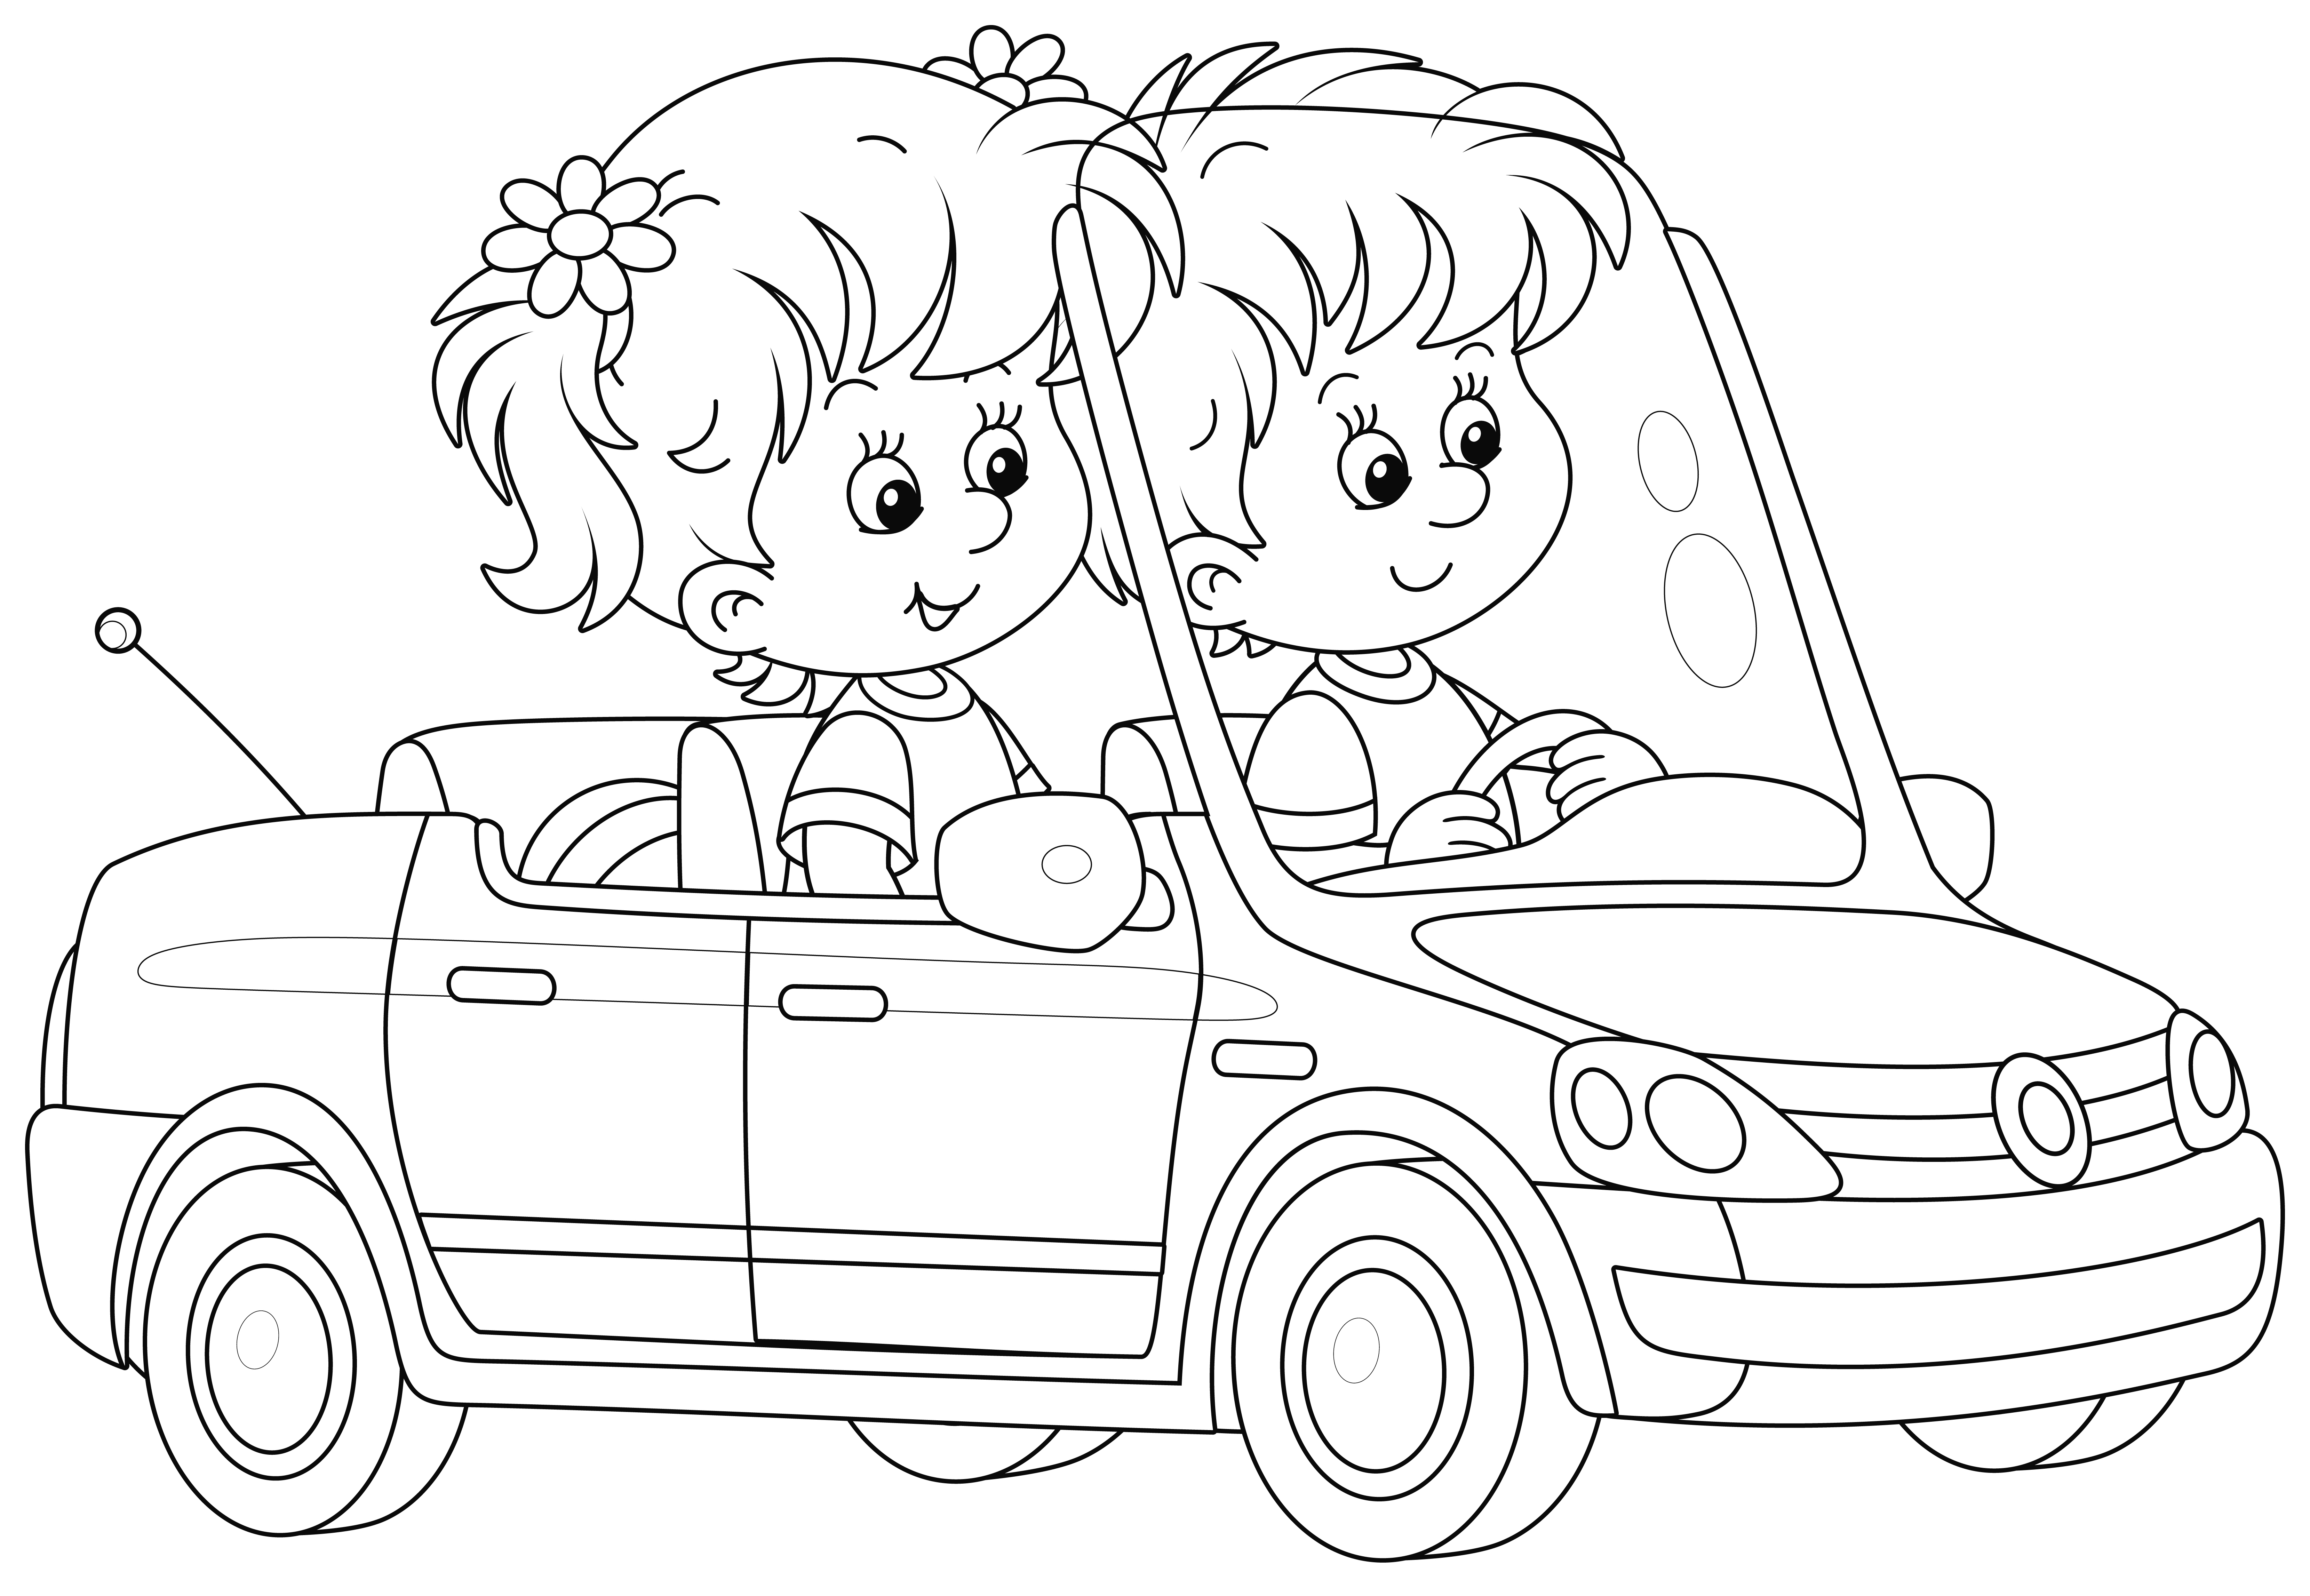 Раскраска маленькие девочка и мальчик едут на такси формата А4 в высоком качестве